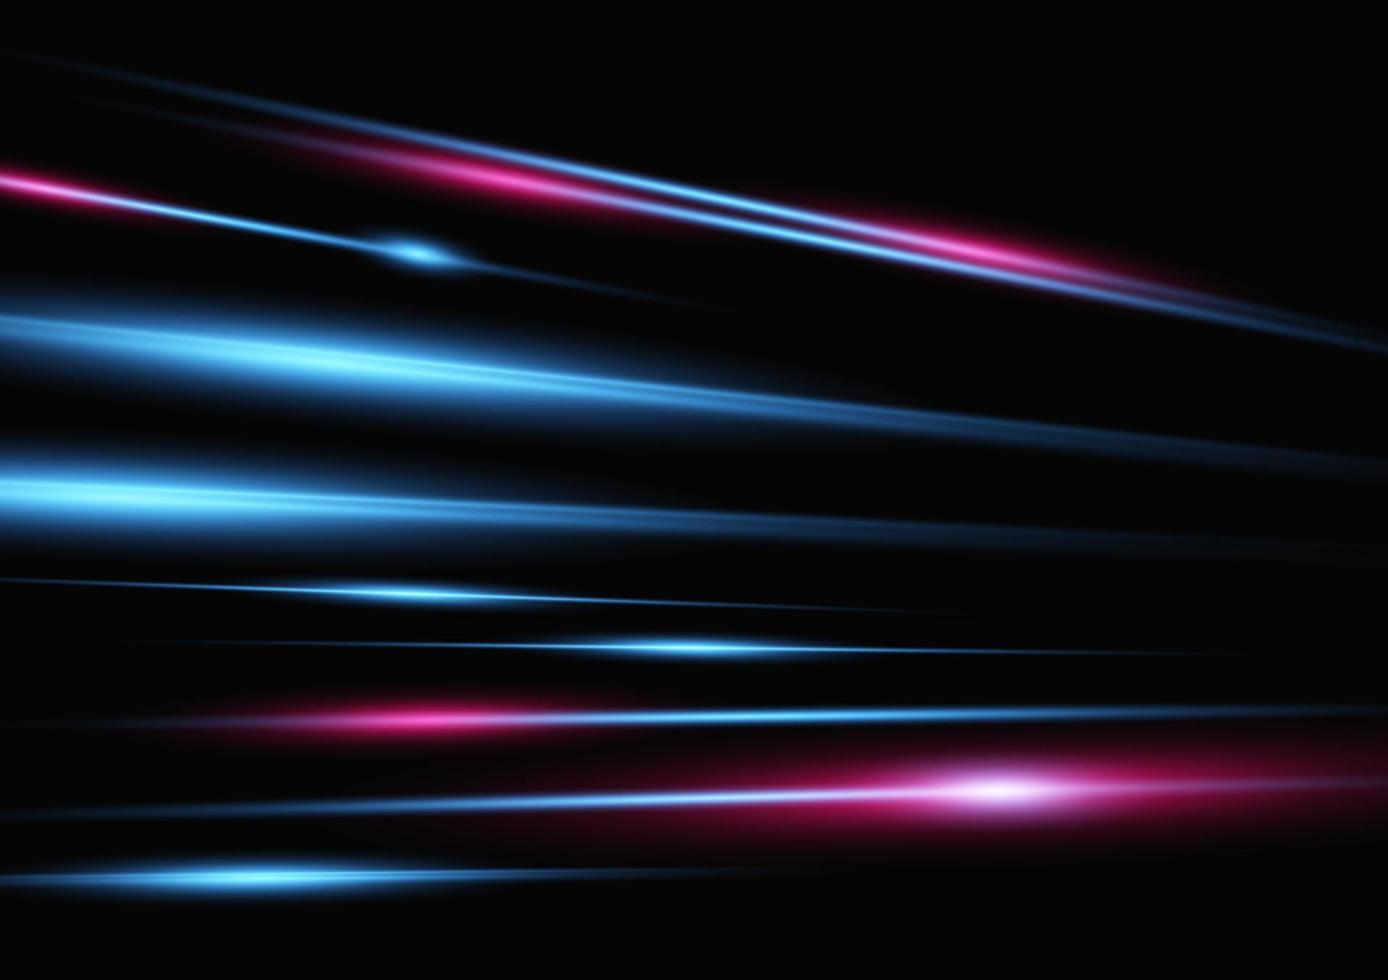 efeito de luz neon de velocidade abstrata na ilustração vetorial de fundo preto vetor